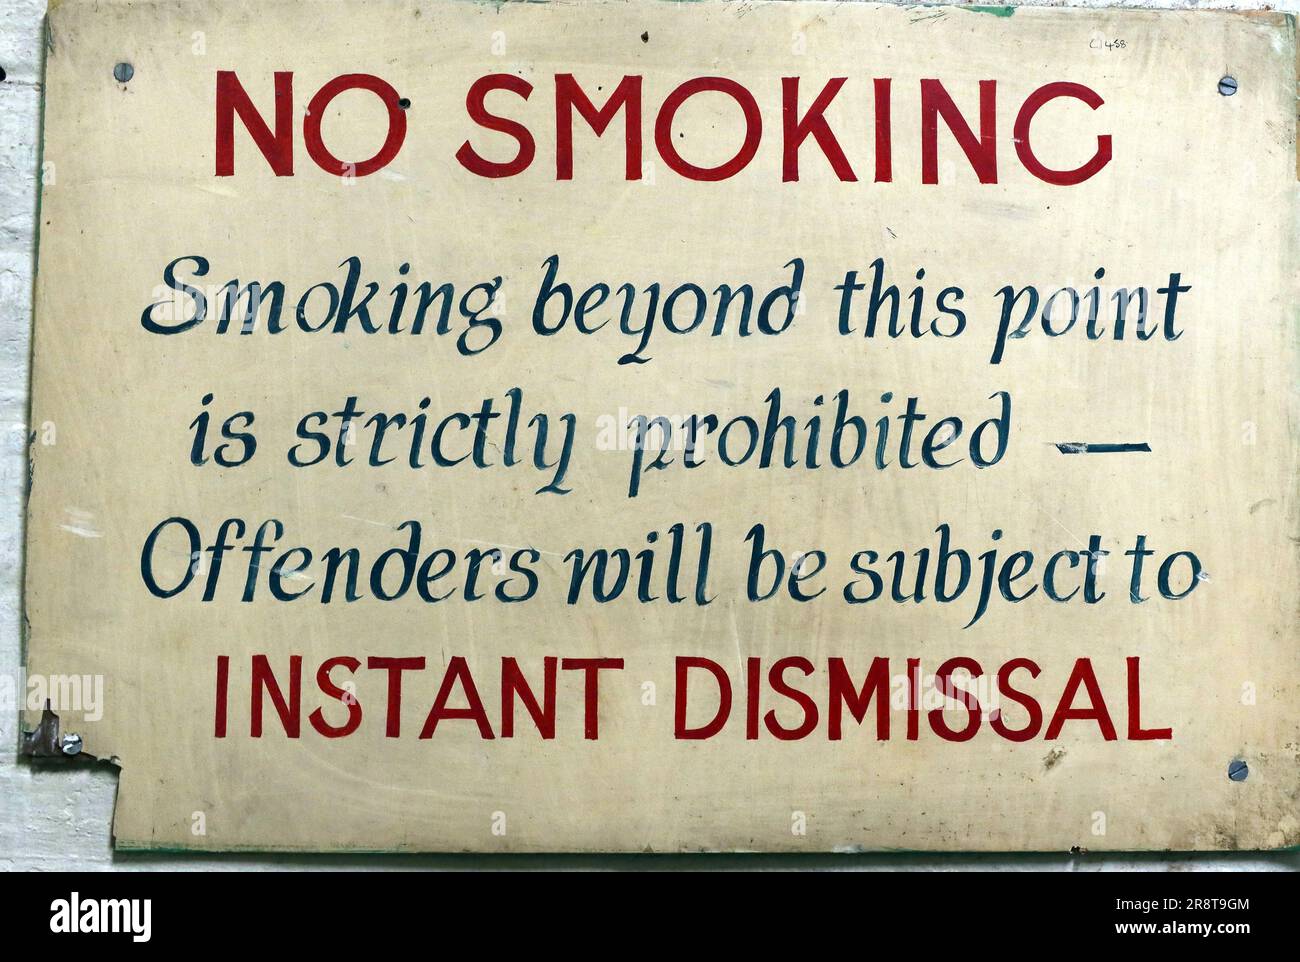 Fabrik Rauchverbot-Schild - jenseits dieses Punktes ist strengstens verboten - Straftäter werden sofort entlassen, Leigh, Großbritannien Stockfoto